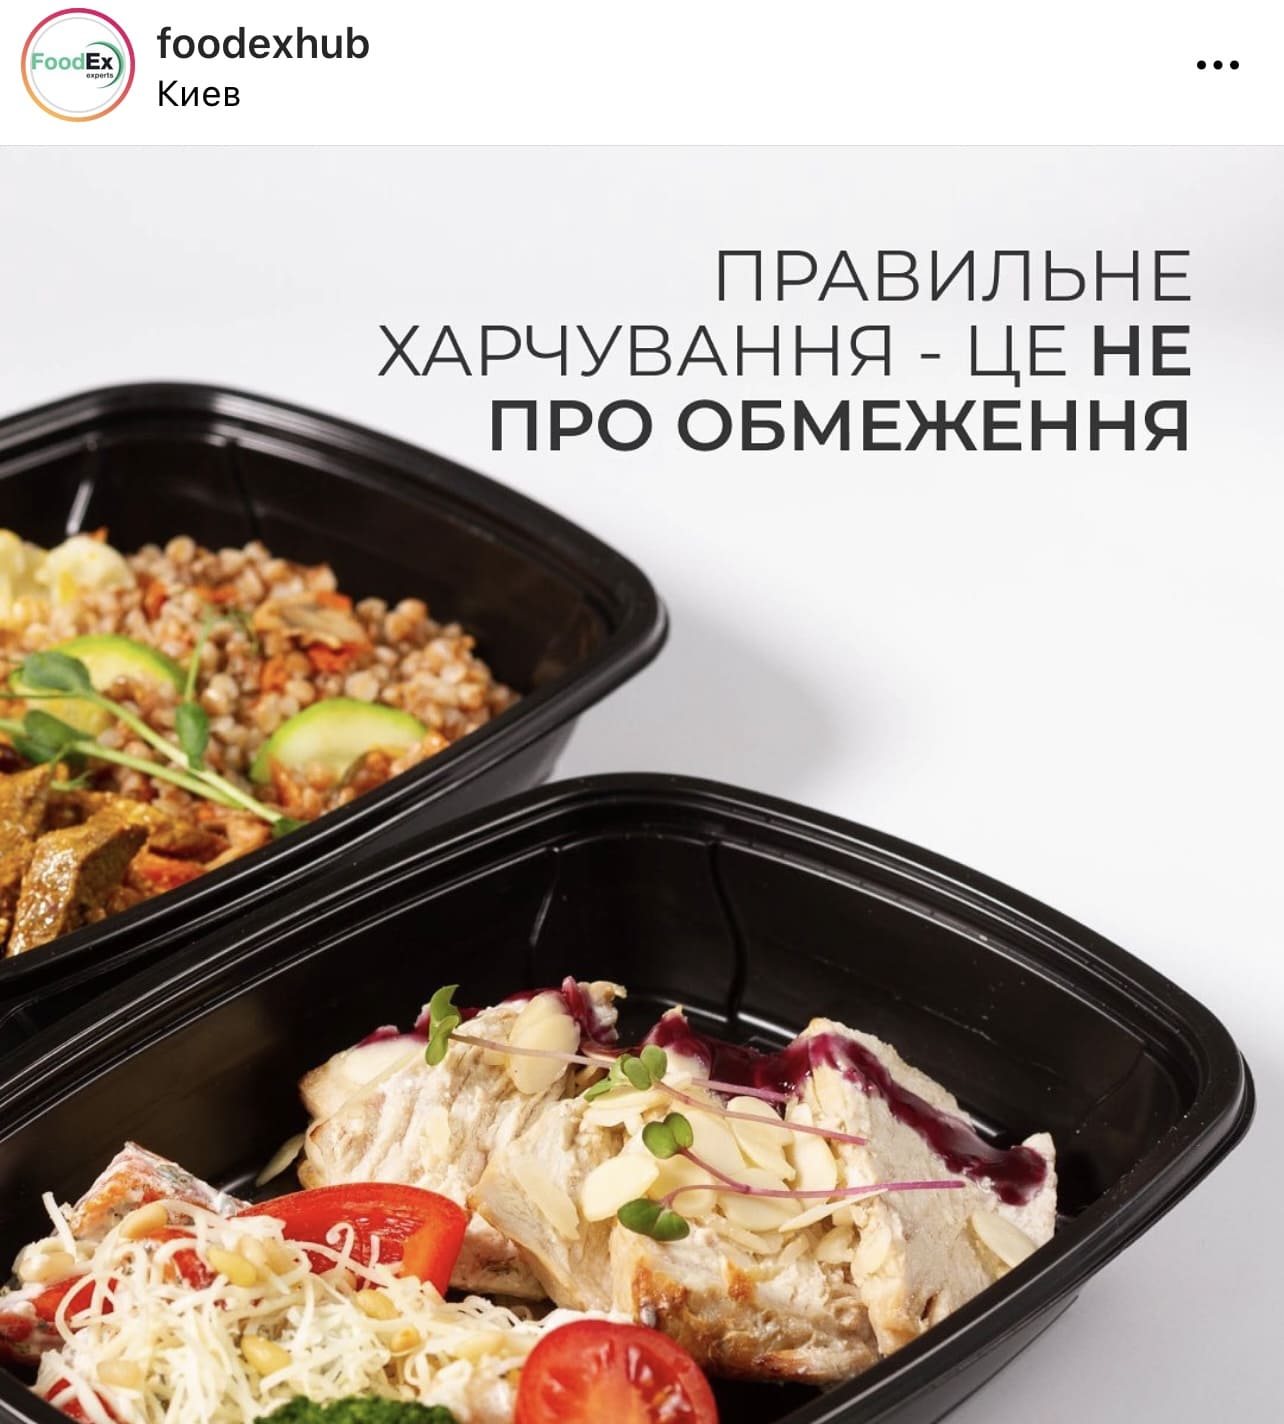 Переходим на ПП меню: доставки здорового питания по Киеву  фото 1